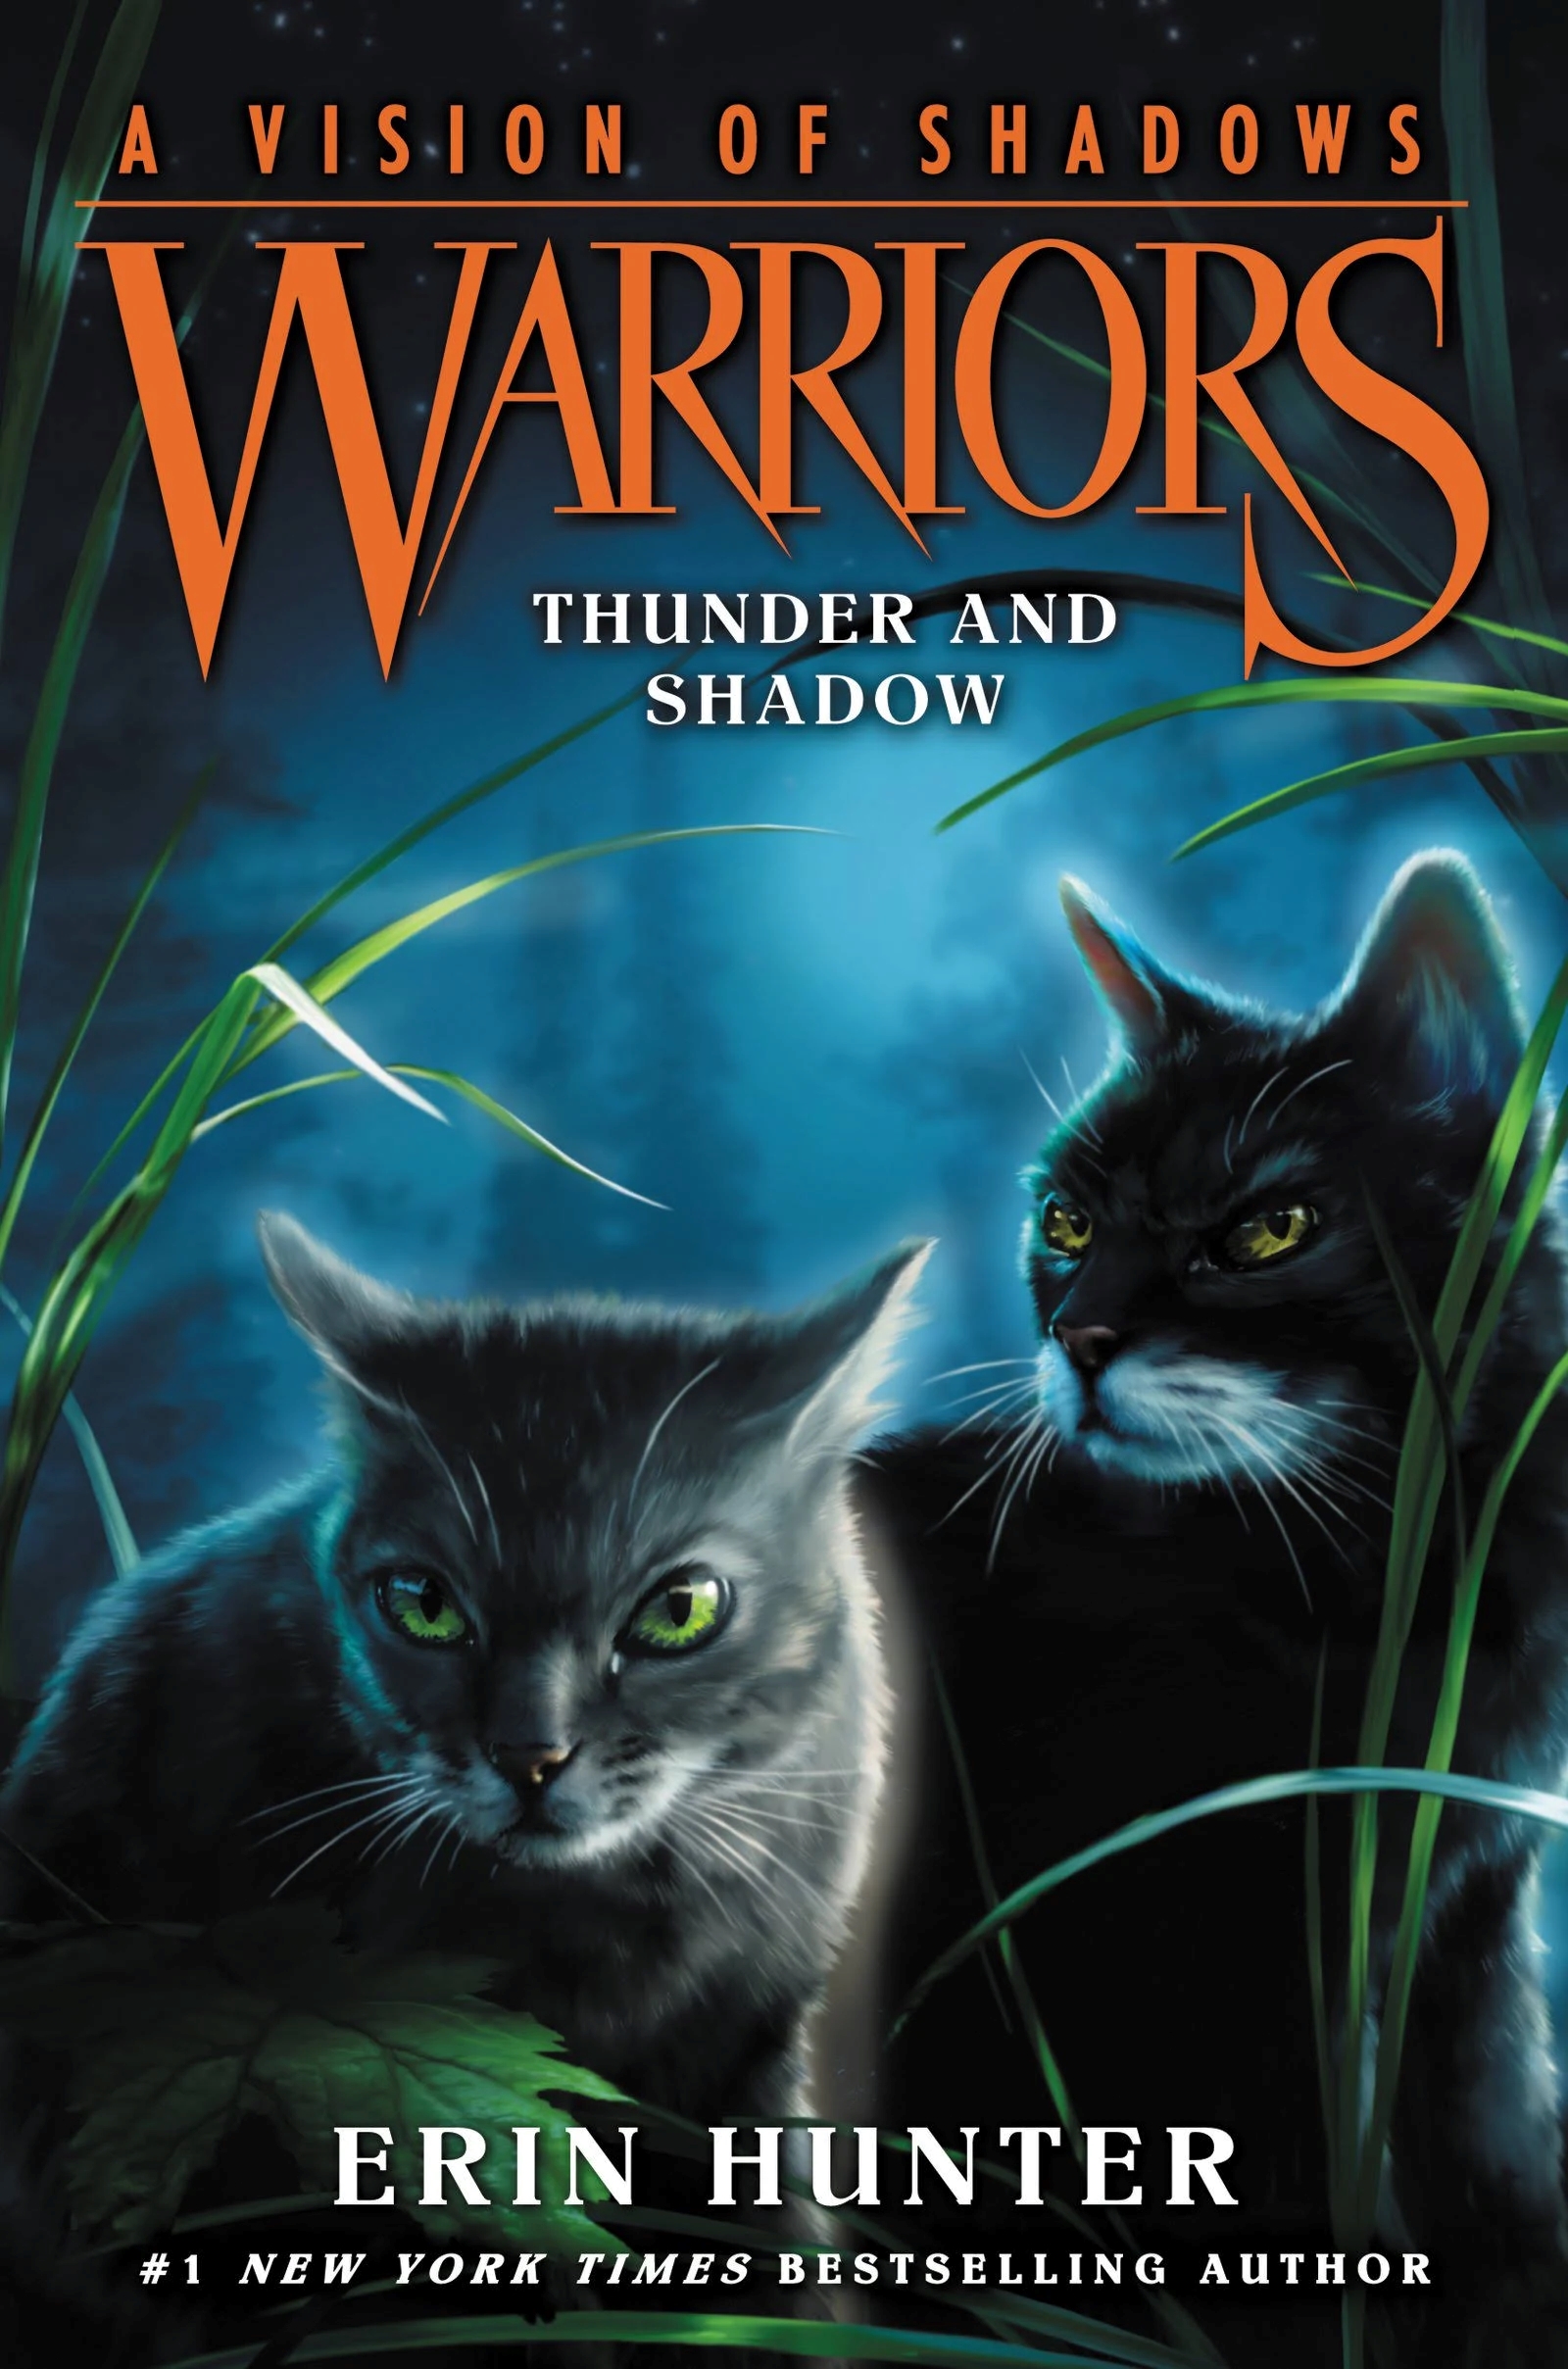 Wind (book), Warriors Wiki